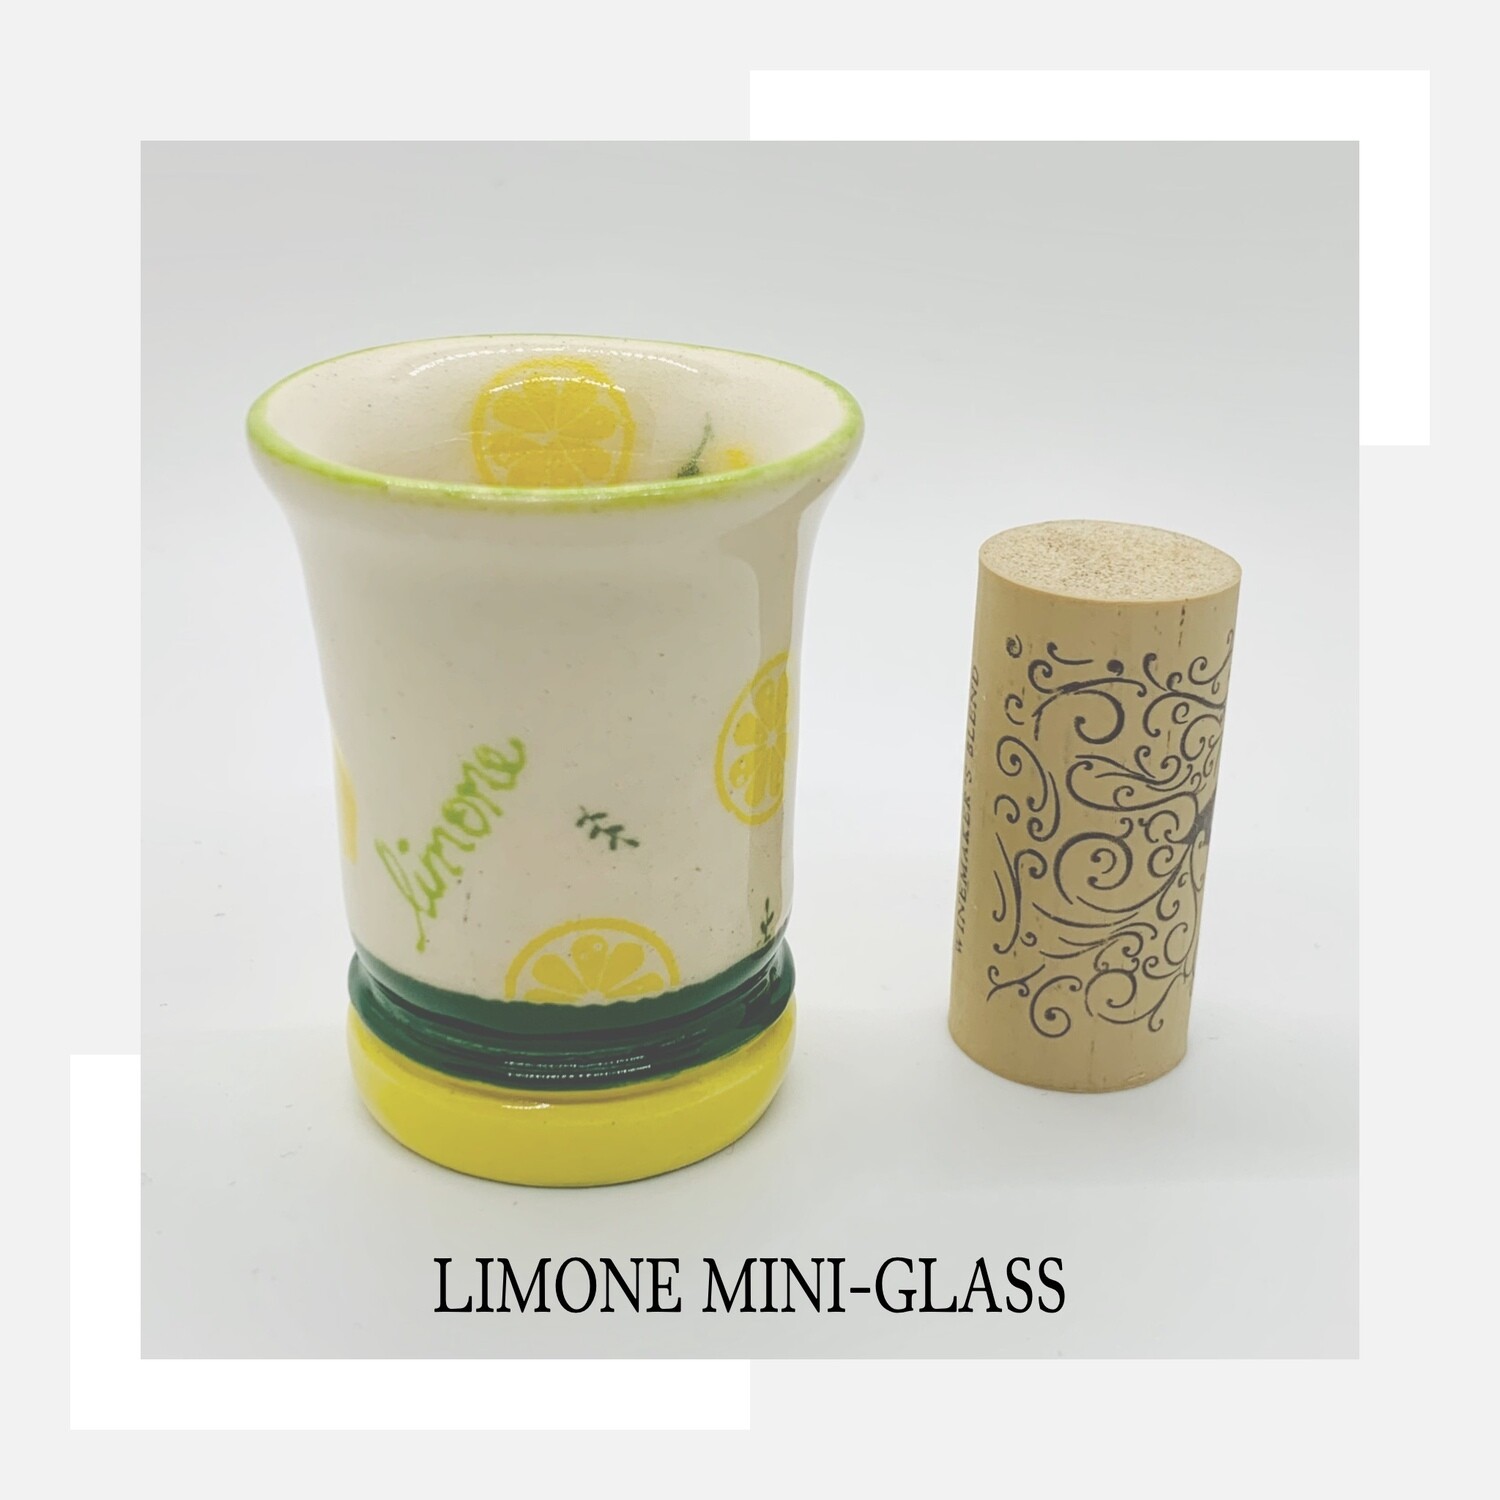 Lemon Mini-Glass